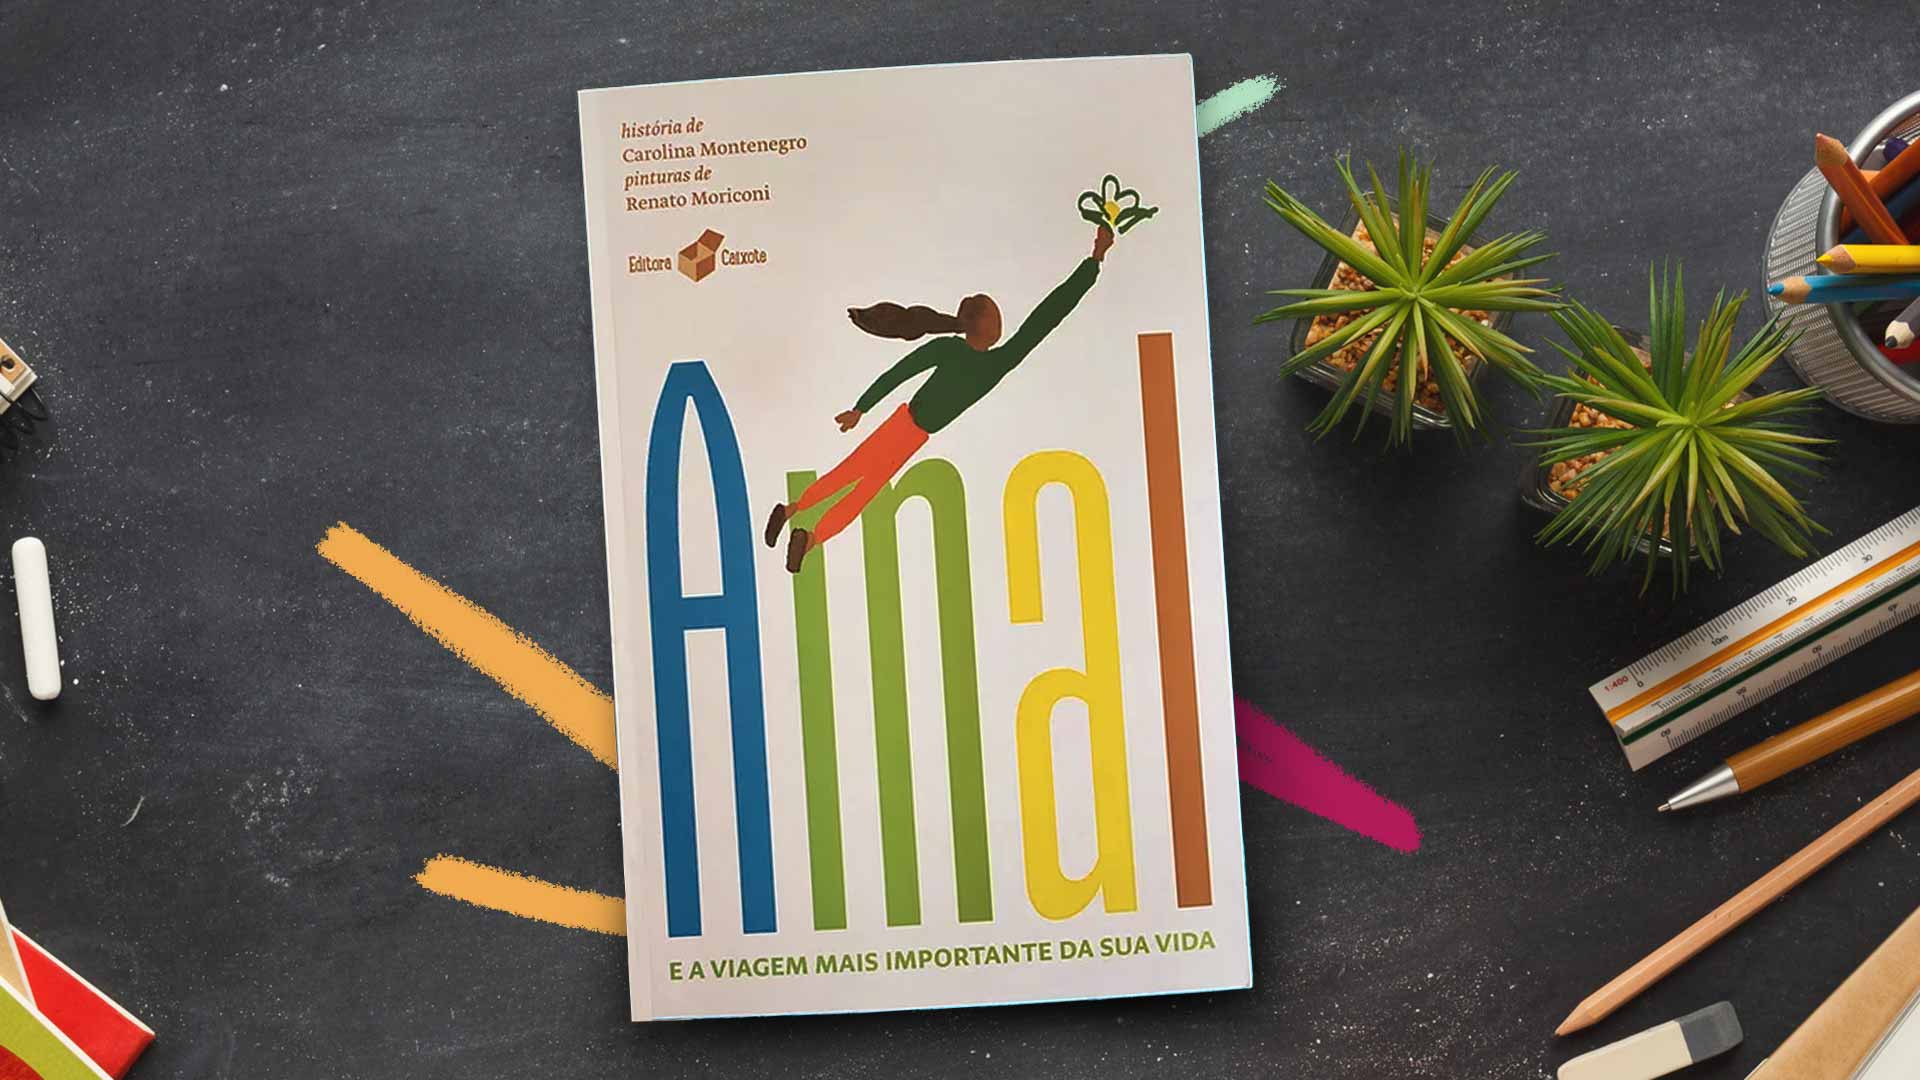 Foto da capa do livro “Amal”, a viagem mais importante da sua vida. Infanto-juvenil que retrata crianças refugiadas